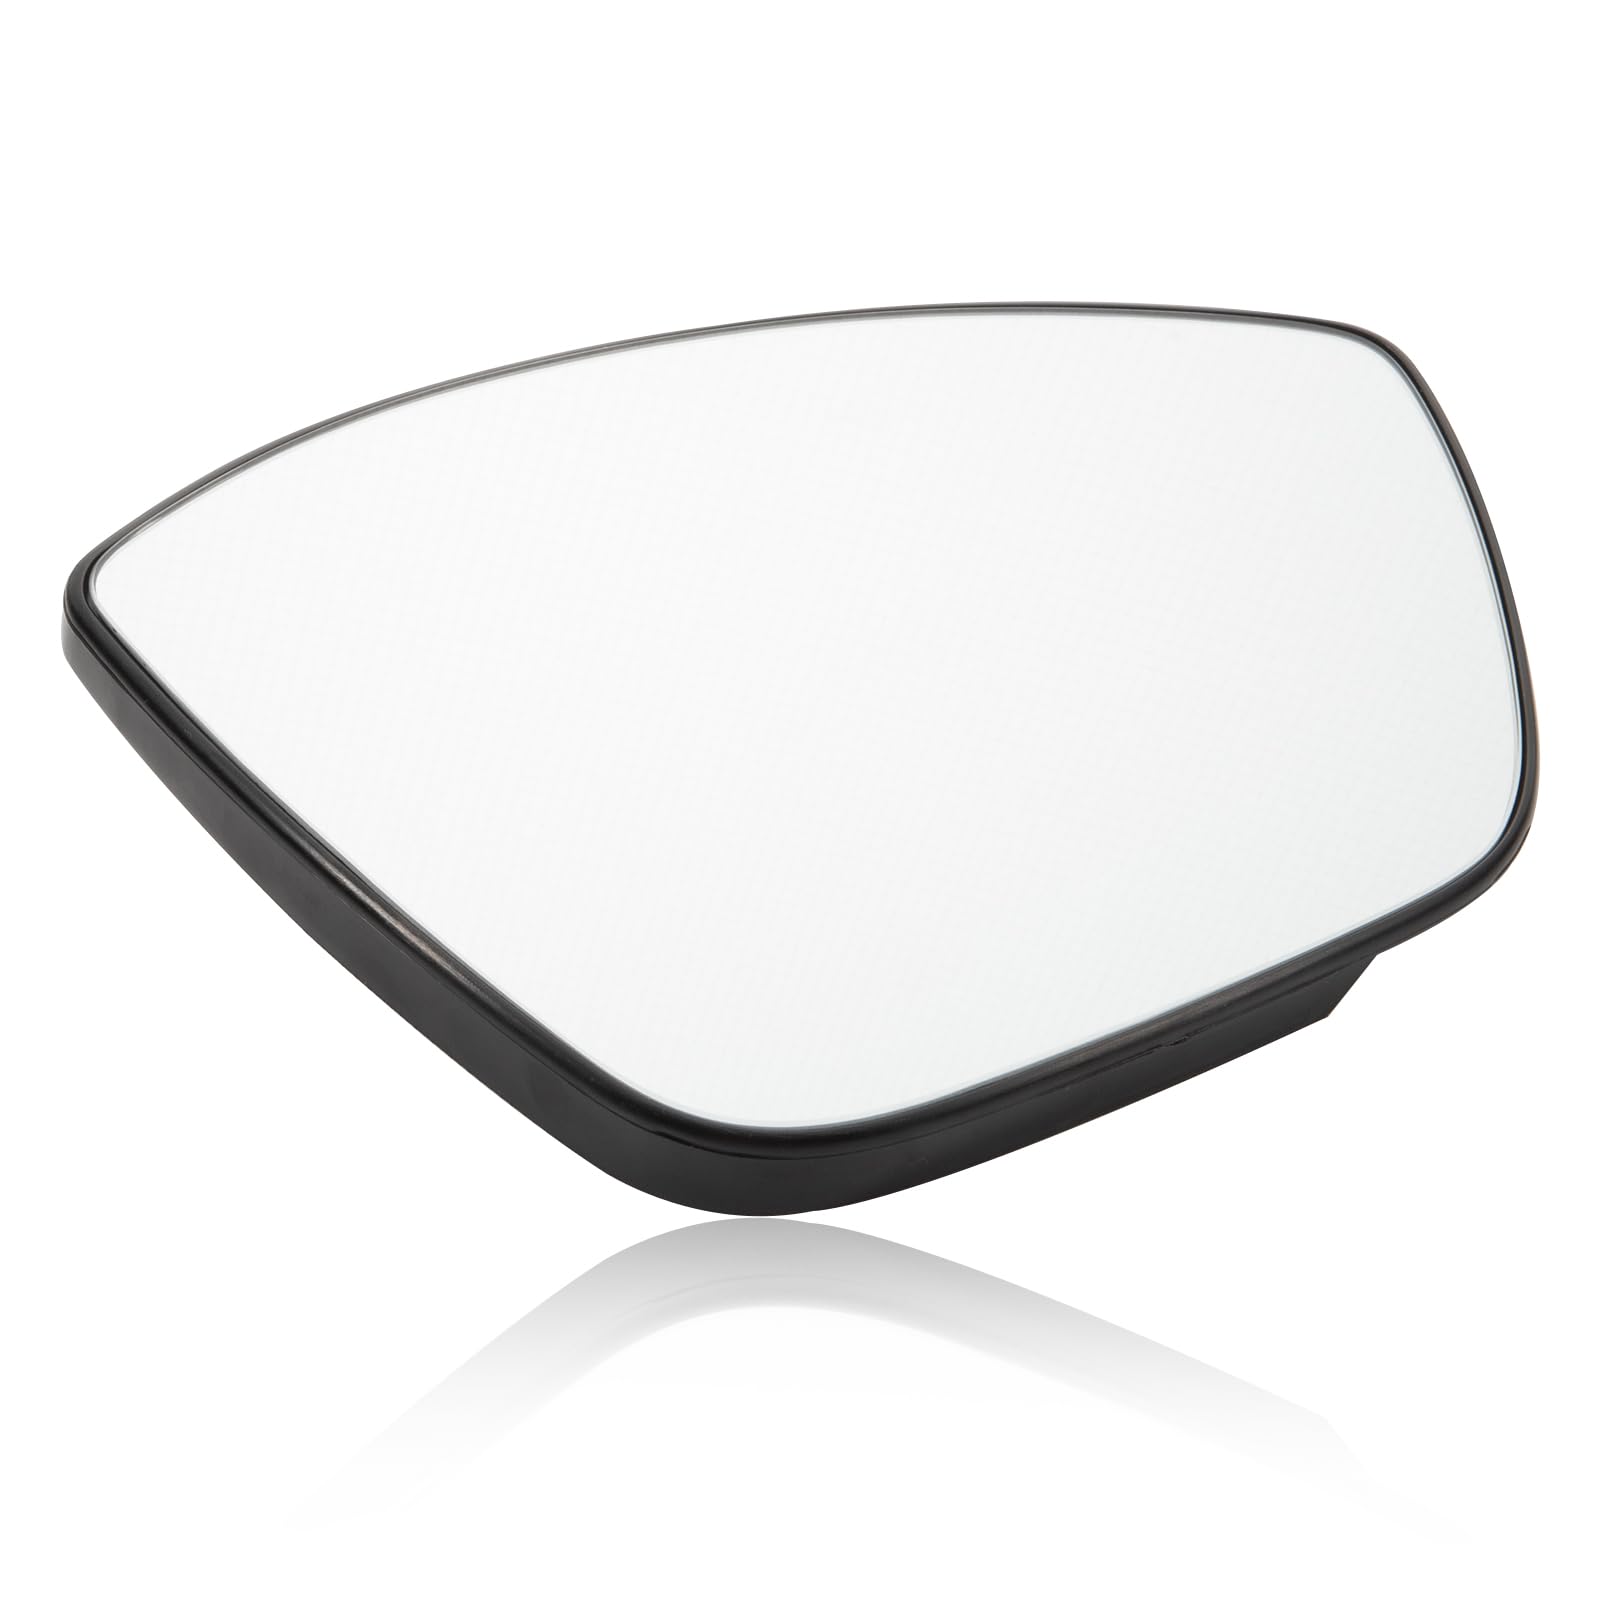 Konuooer Rückspiegelglas rechts (Beifahrerseite) beheizbar, kompatibel mit Peu-geot 208/308/2008 2013-2019 Spiegelglas rechts, kompatibel mit C3 MK3 2016-2021 von Konuooer